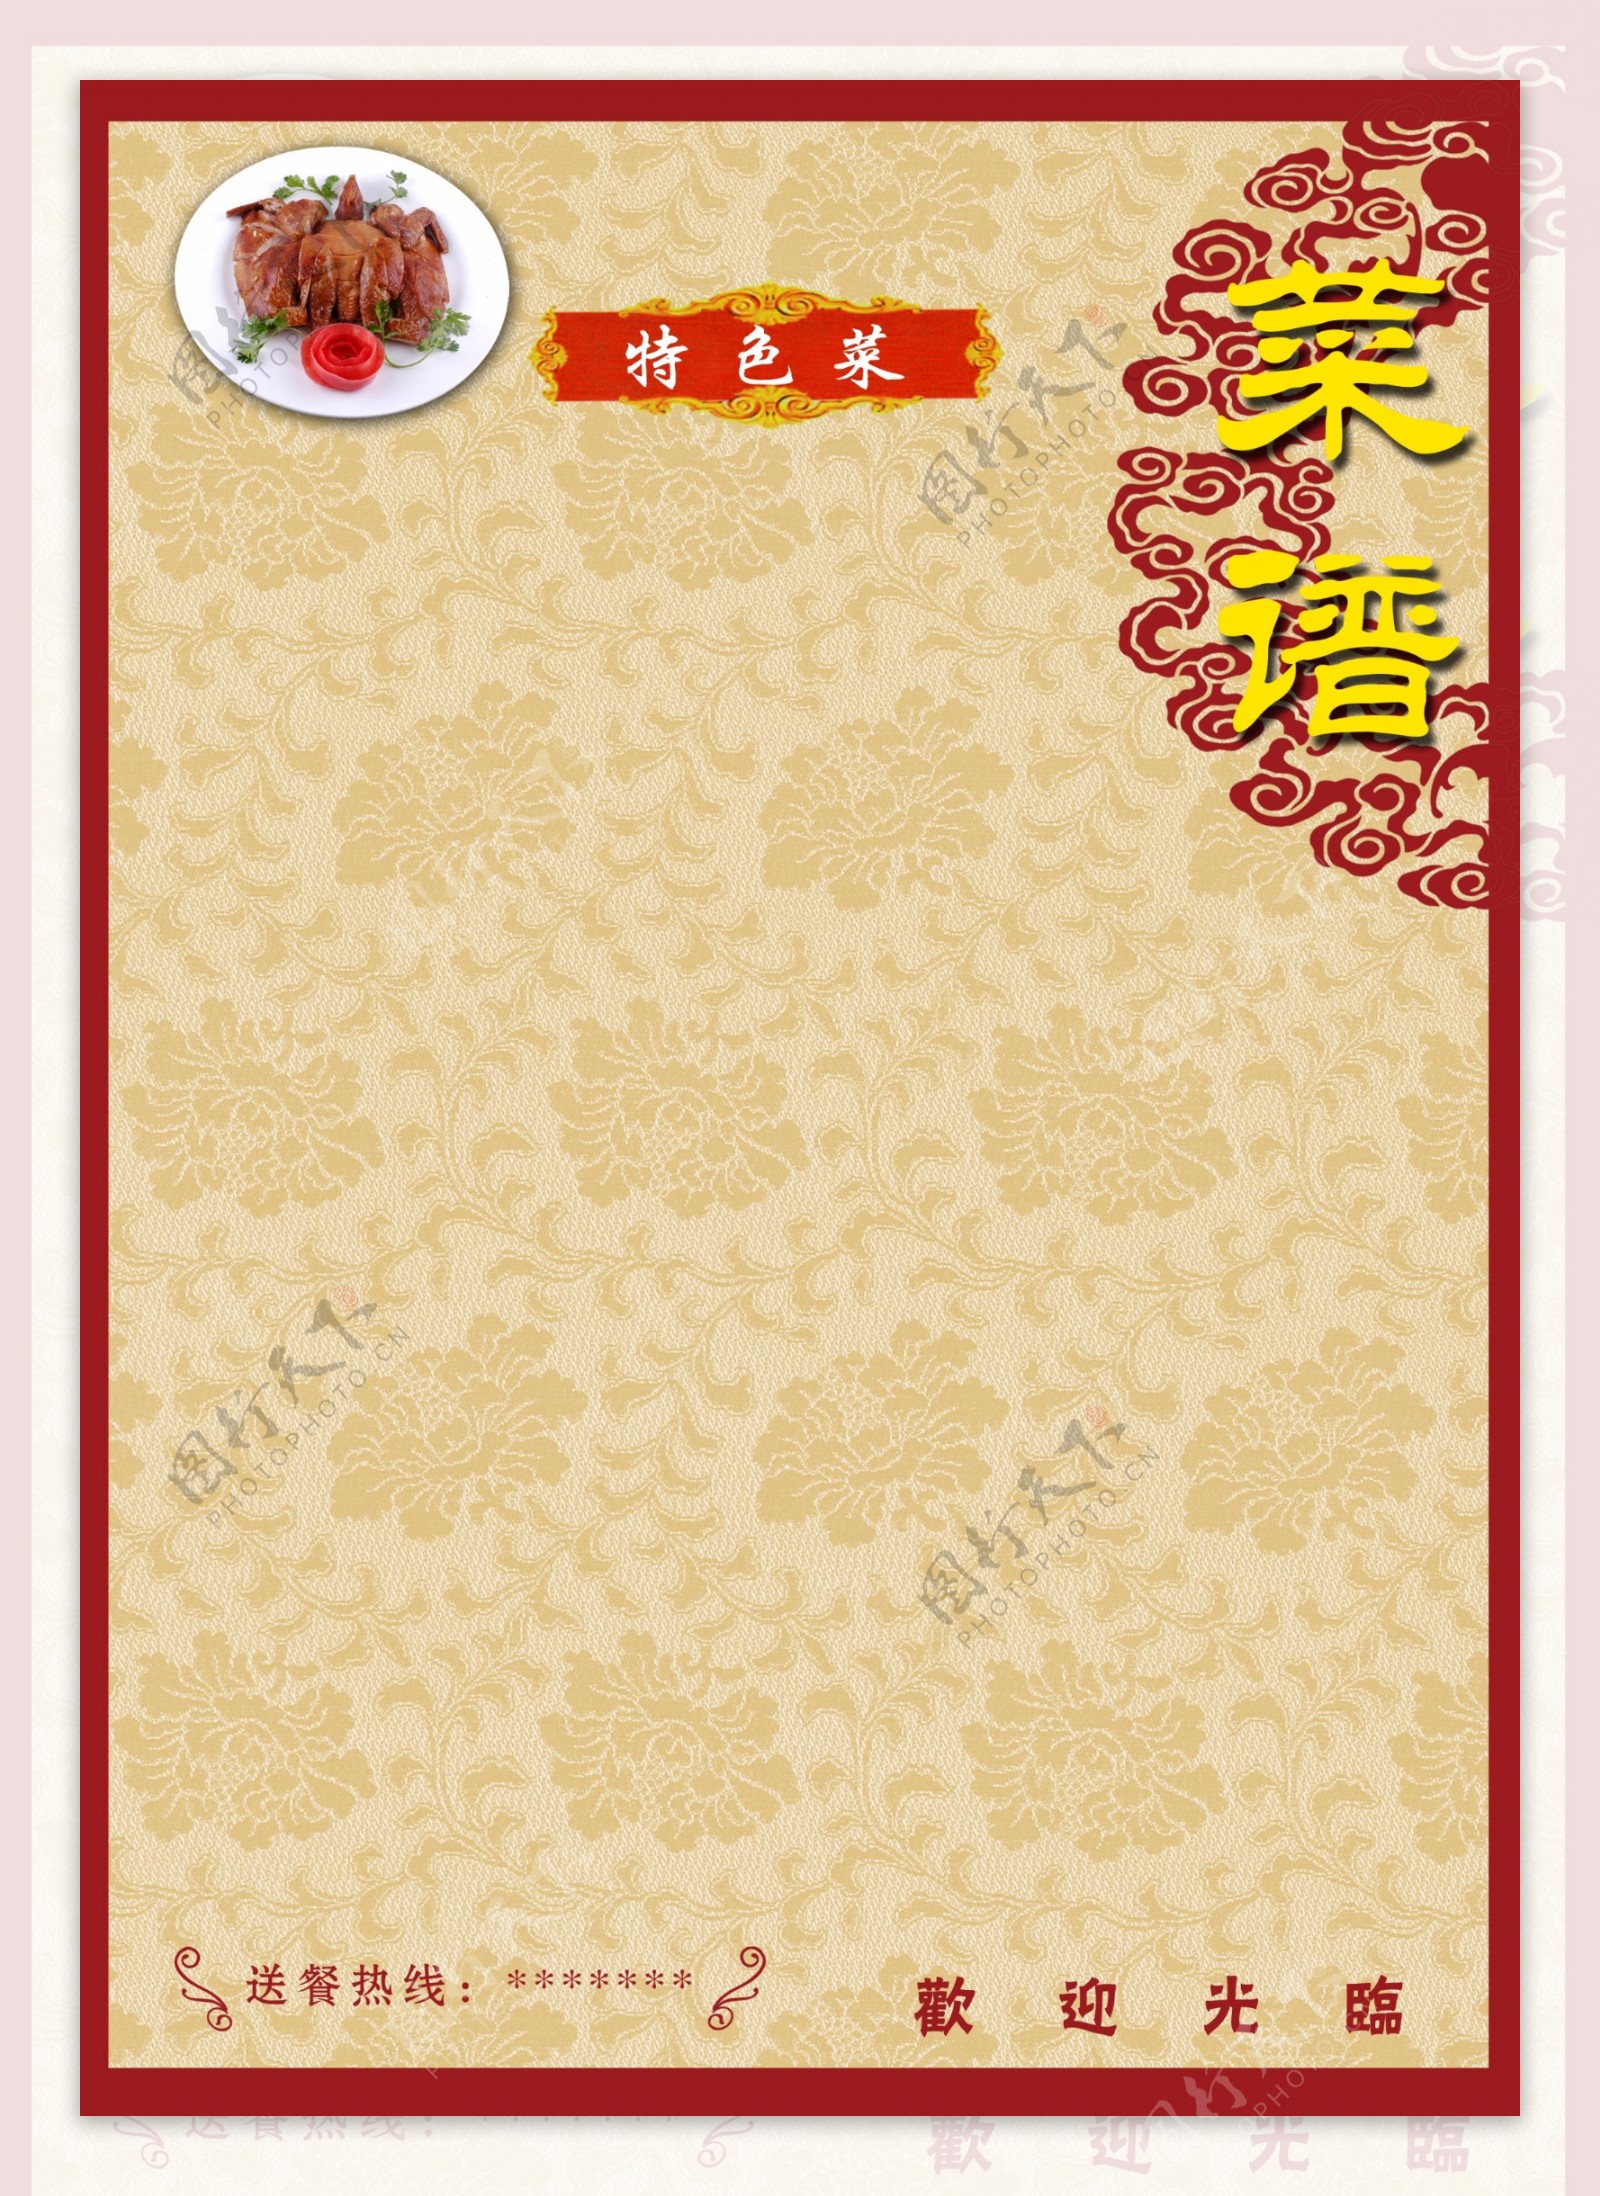 牡丹花纹菜谱背景中式特色菜典雅菜谱